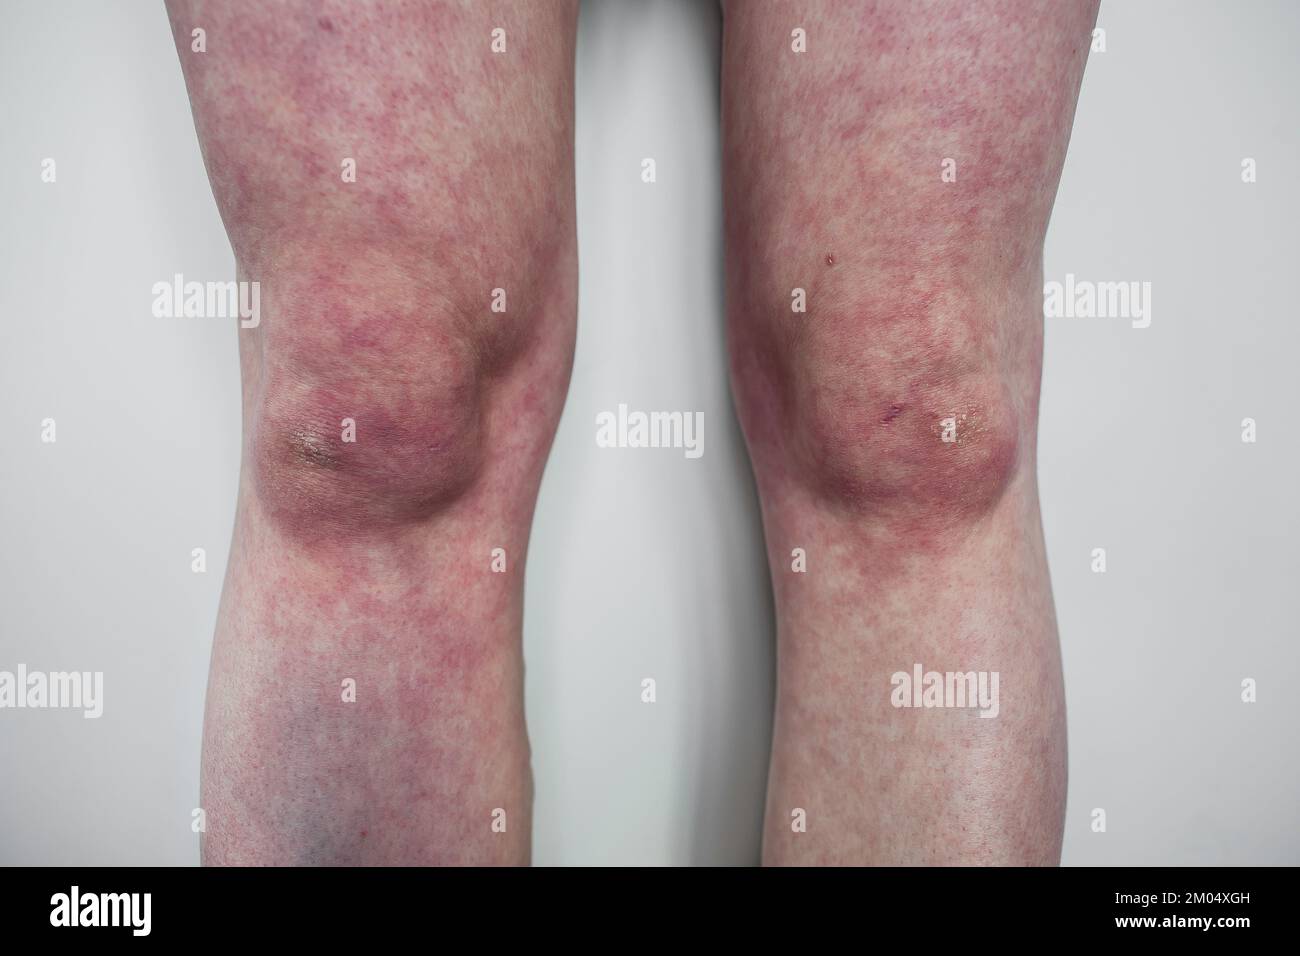 Beine des Menschen mit orthostatischem Intoleranzsyndrom Closeup Livedo reticularis mit trockener Haut Dysautonomia Purpurverfärbung der Beine beim Stehen Stockfoto